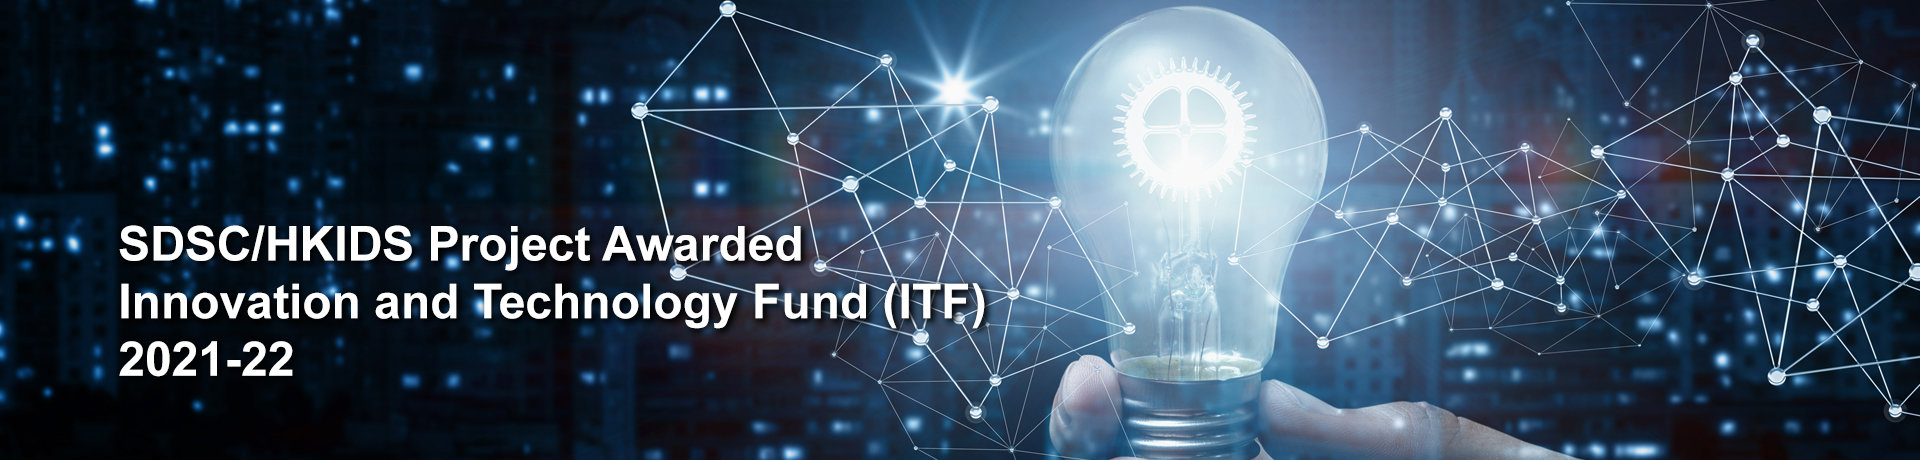 SDSC/HKIDS Project Awarded Innovation and Technology Fund (ITF) 2021-22